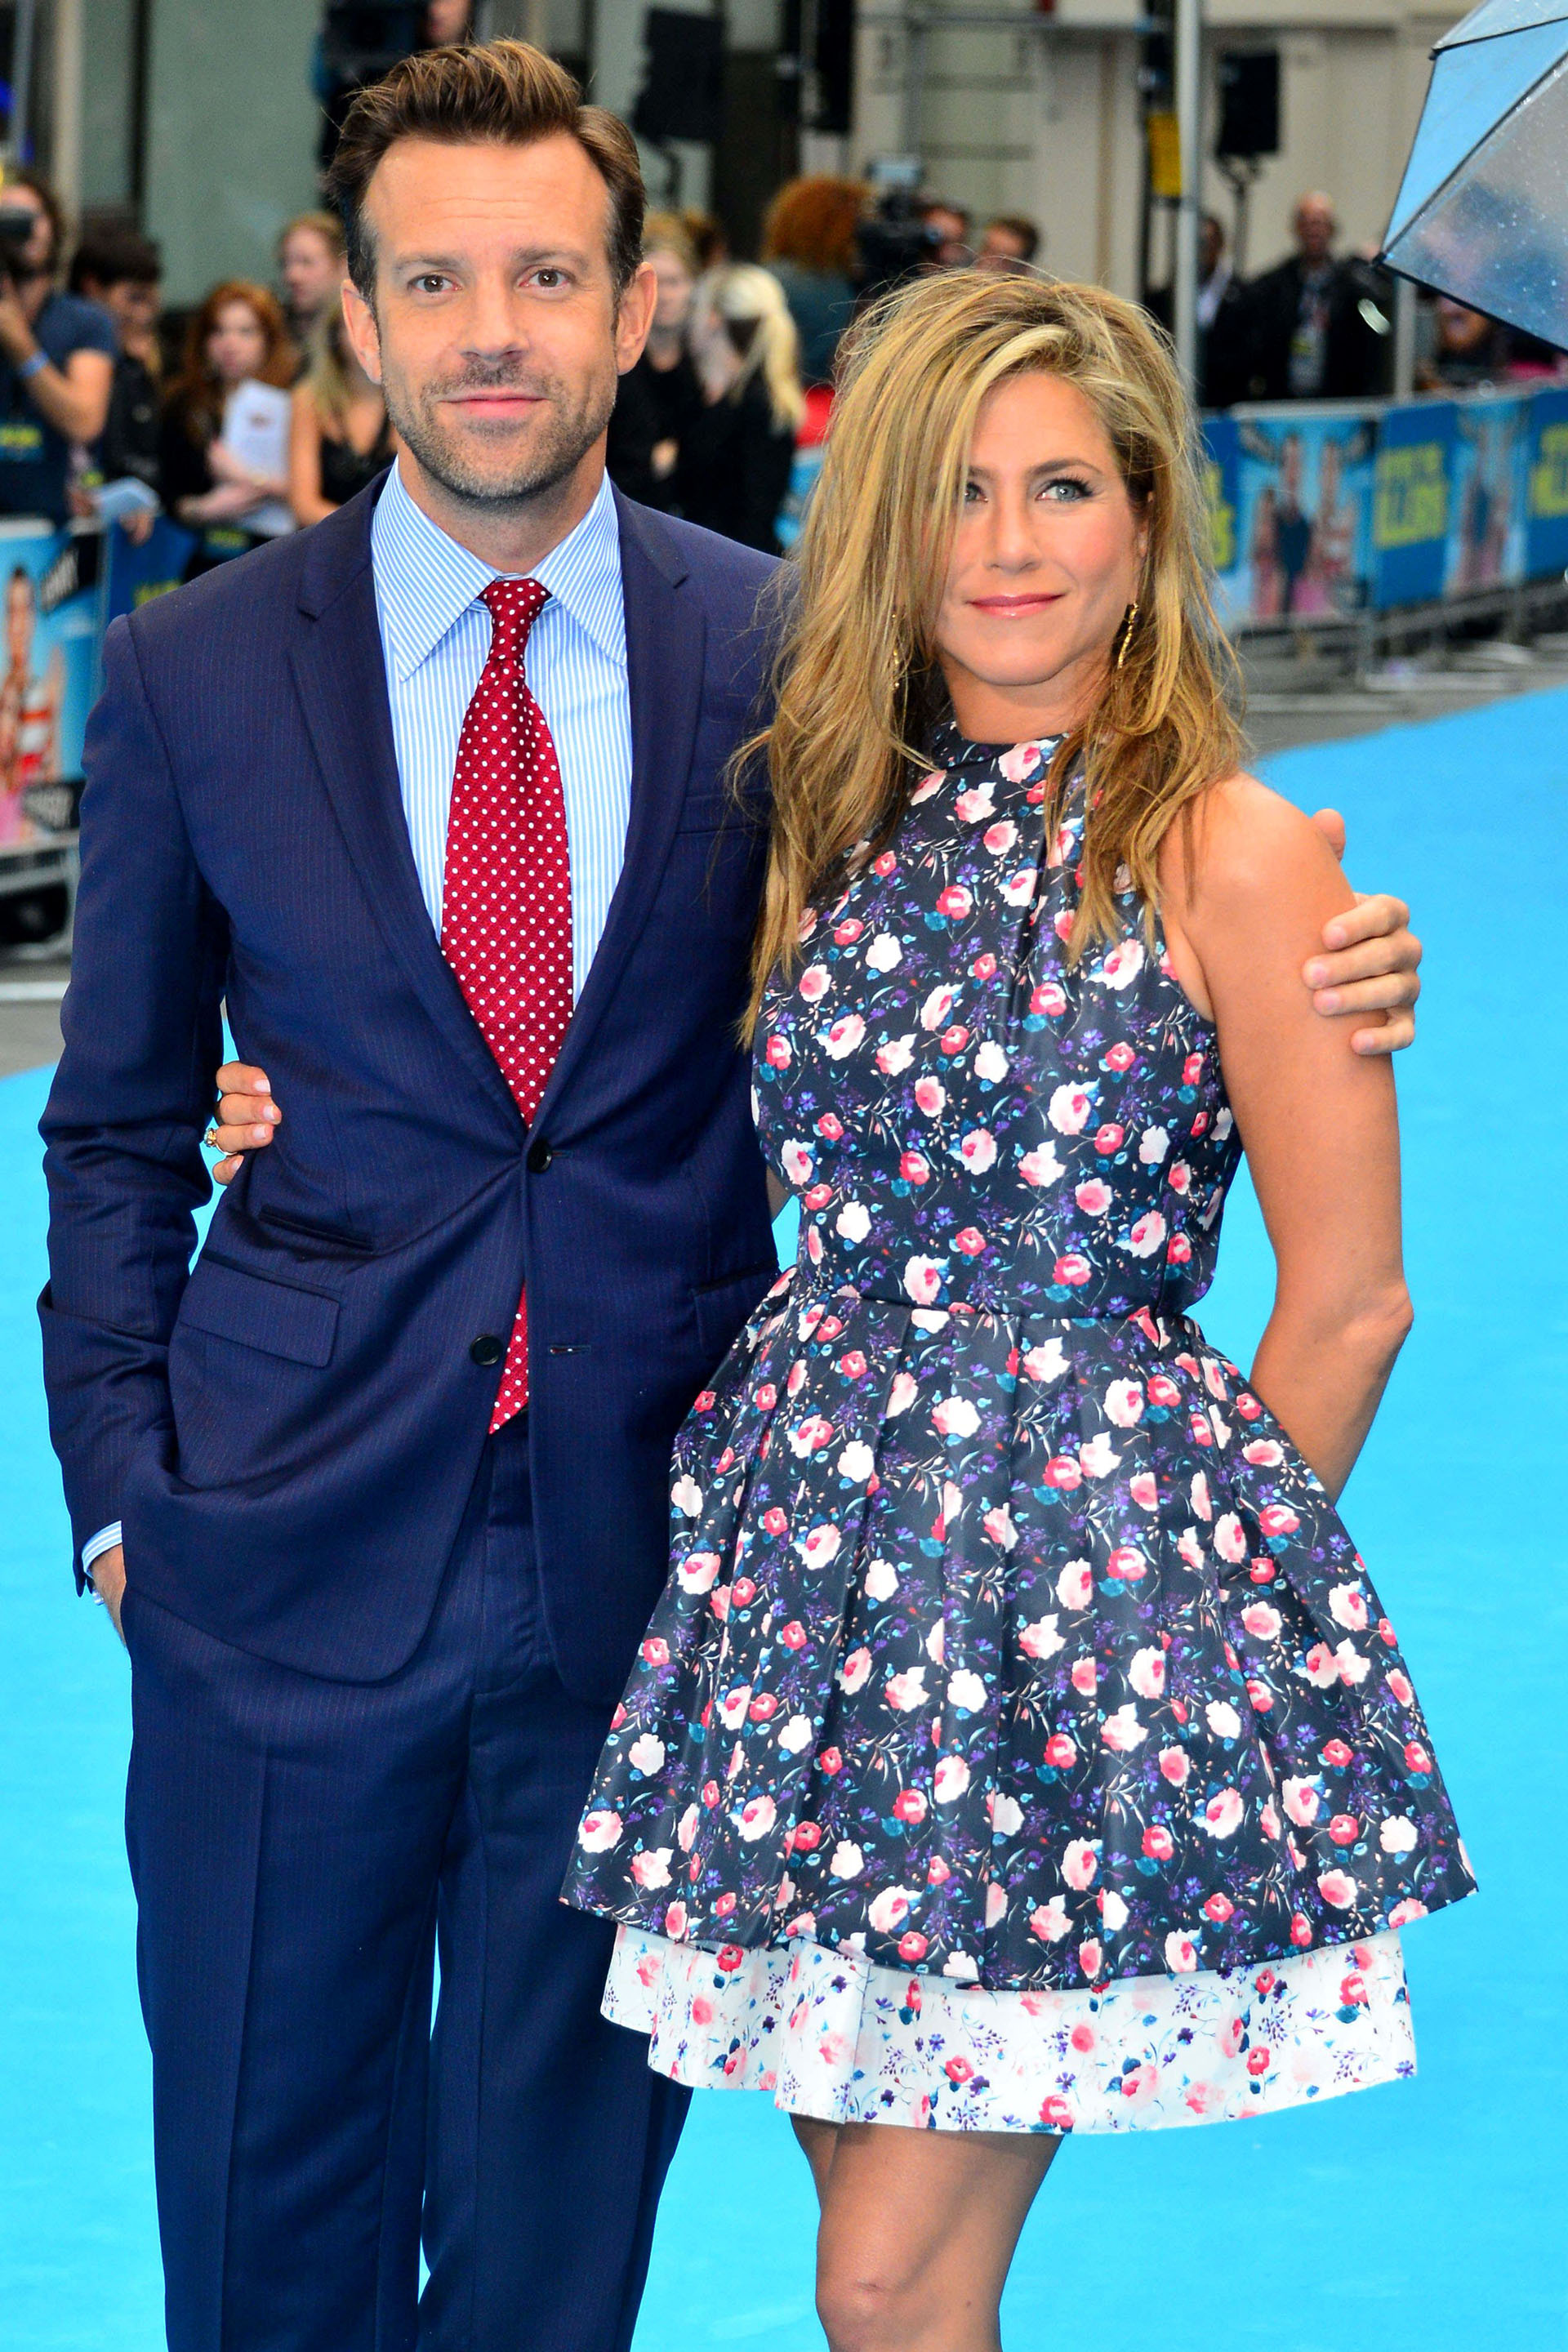 Jason Sudeikis y Jennifer Aniston en la premiere de "We're the Millers" en 2013 (Shutterstock)